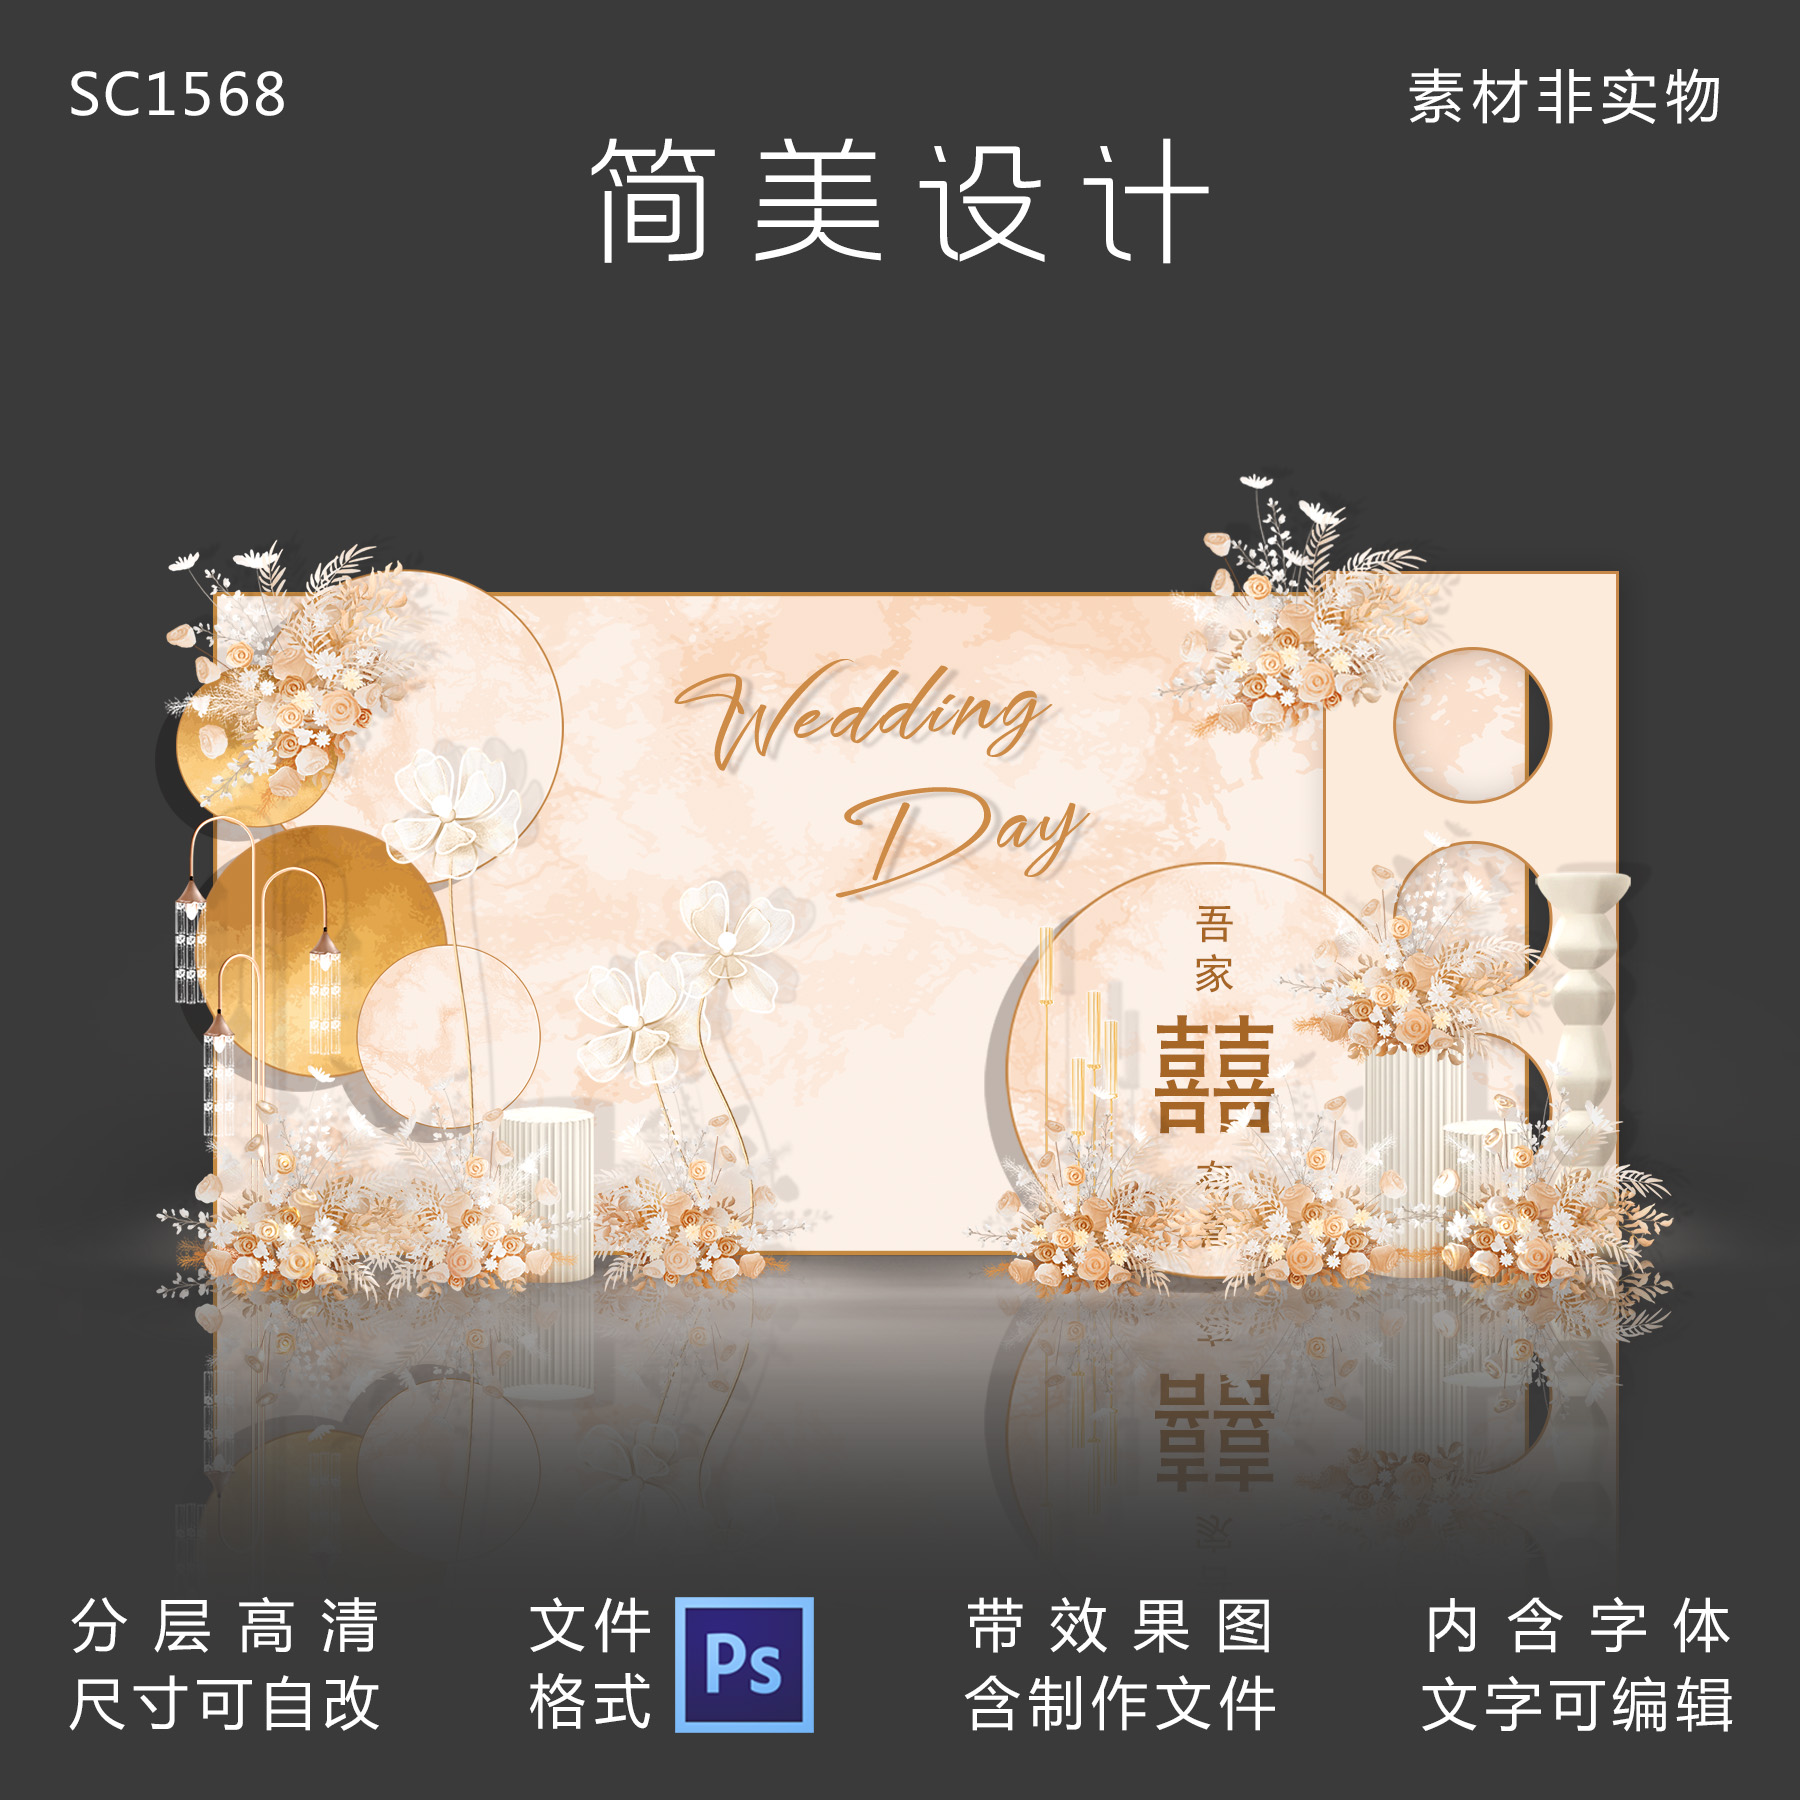 香槟色婚礼效果图迎宾区舞台背景设计KT板喷绘素材PSD制作源文件